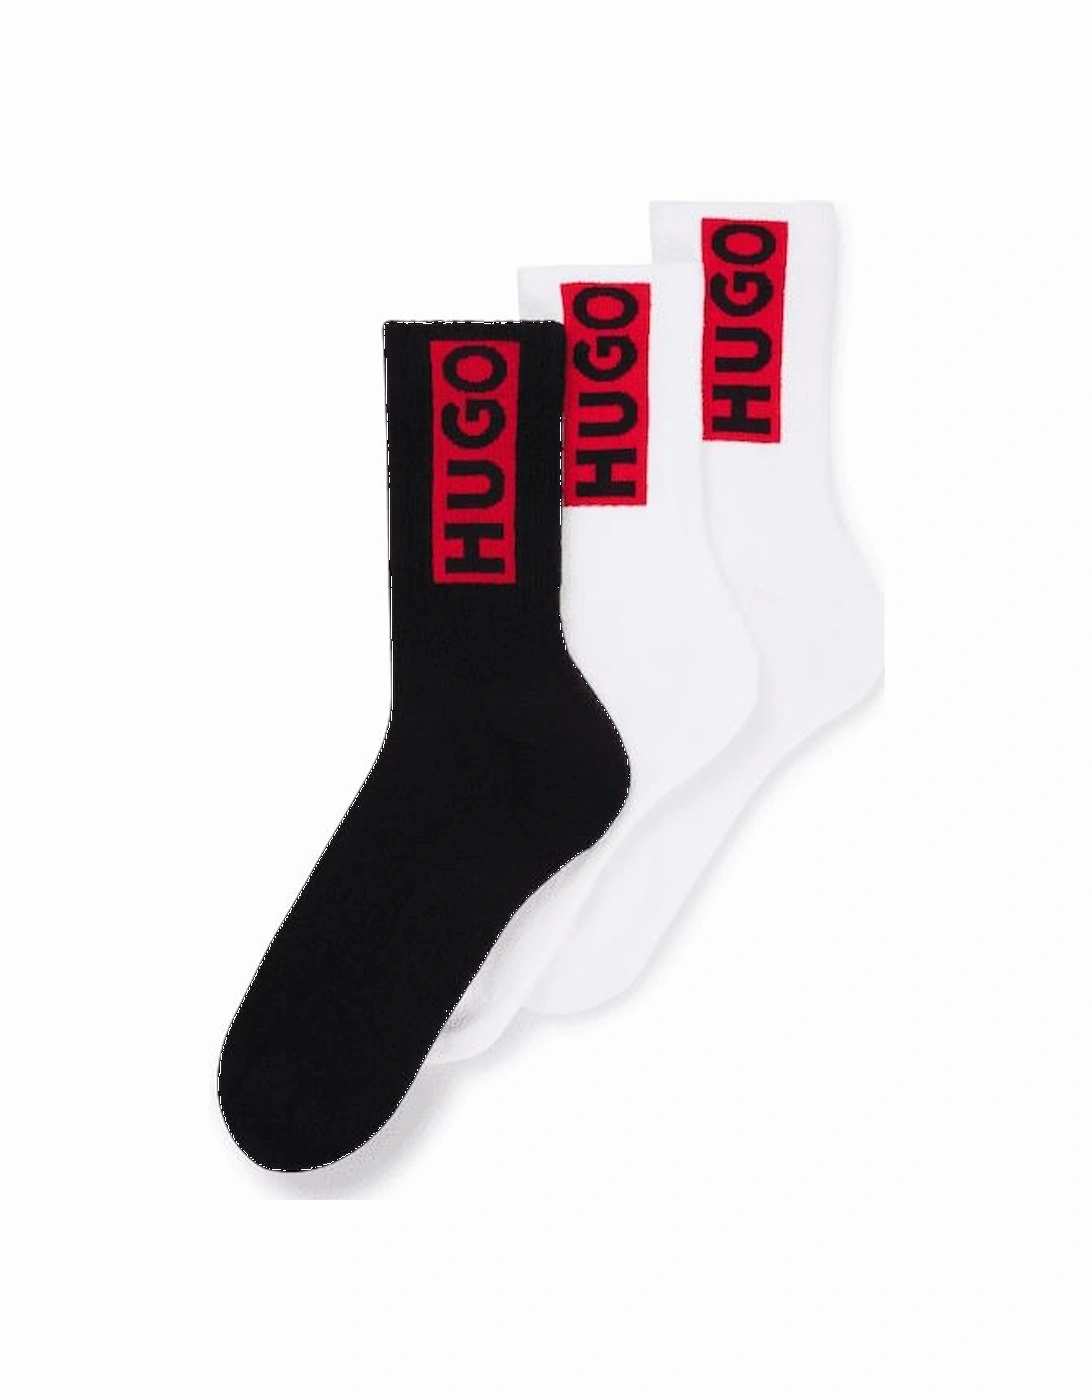 3-Pack Block Red Logo Sports Socks, White/black